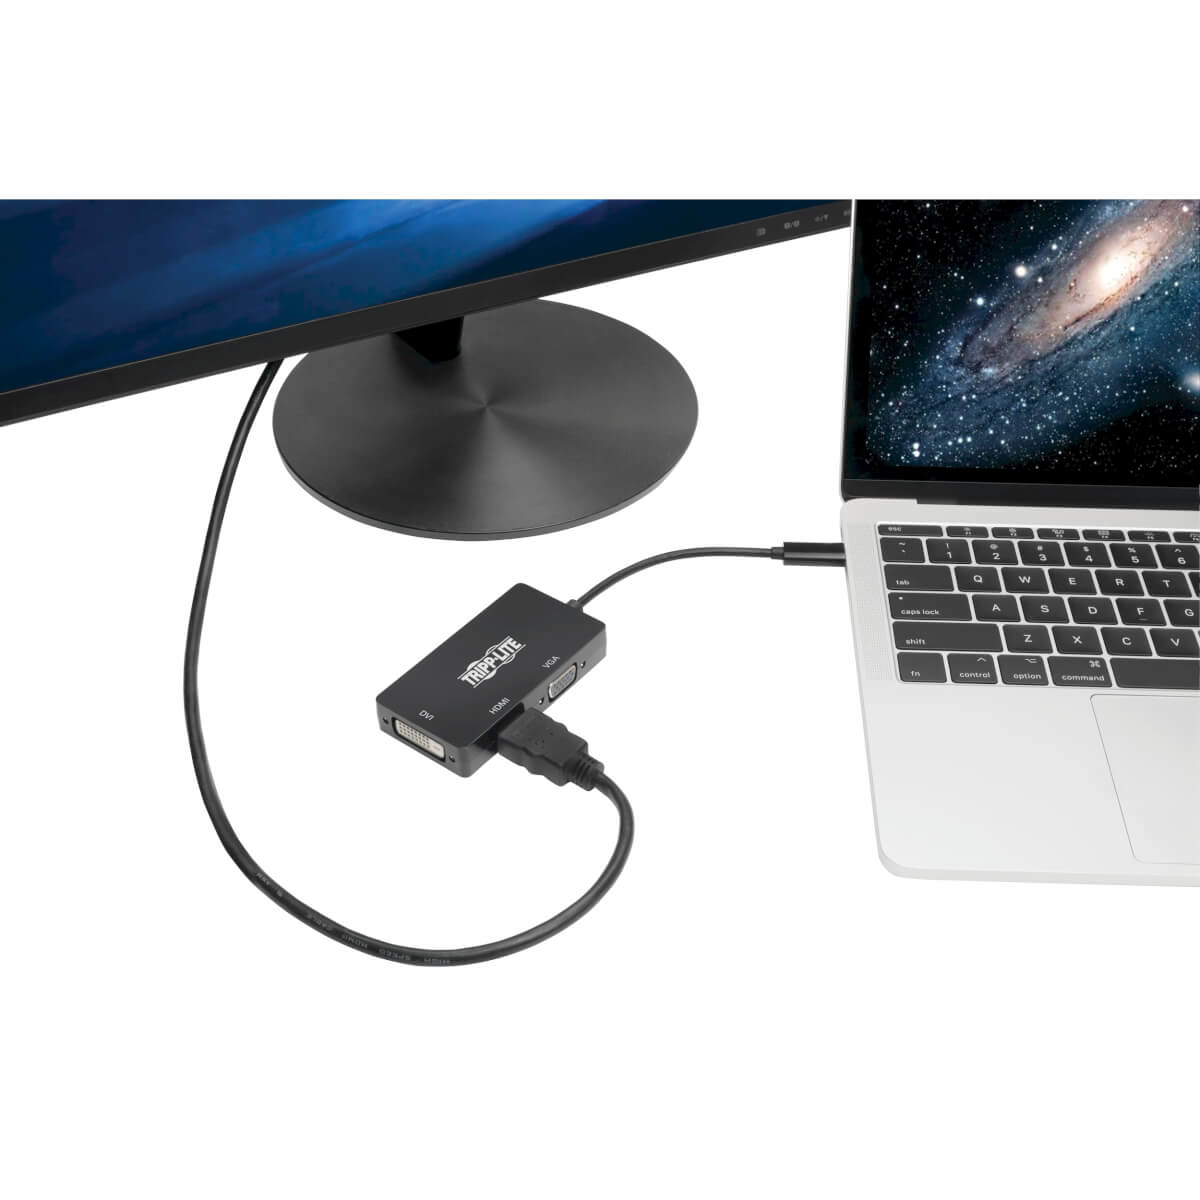 Adaptador USB C a HDMI, compatible con 4K, soporta resoluciones de hasta  3840 x 2160, permite duplicar pantalla en televisores, pantallas,  monitores